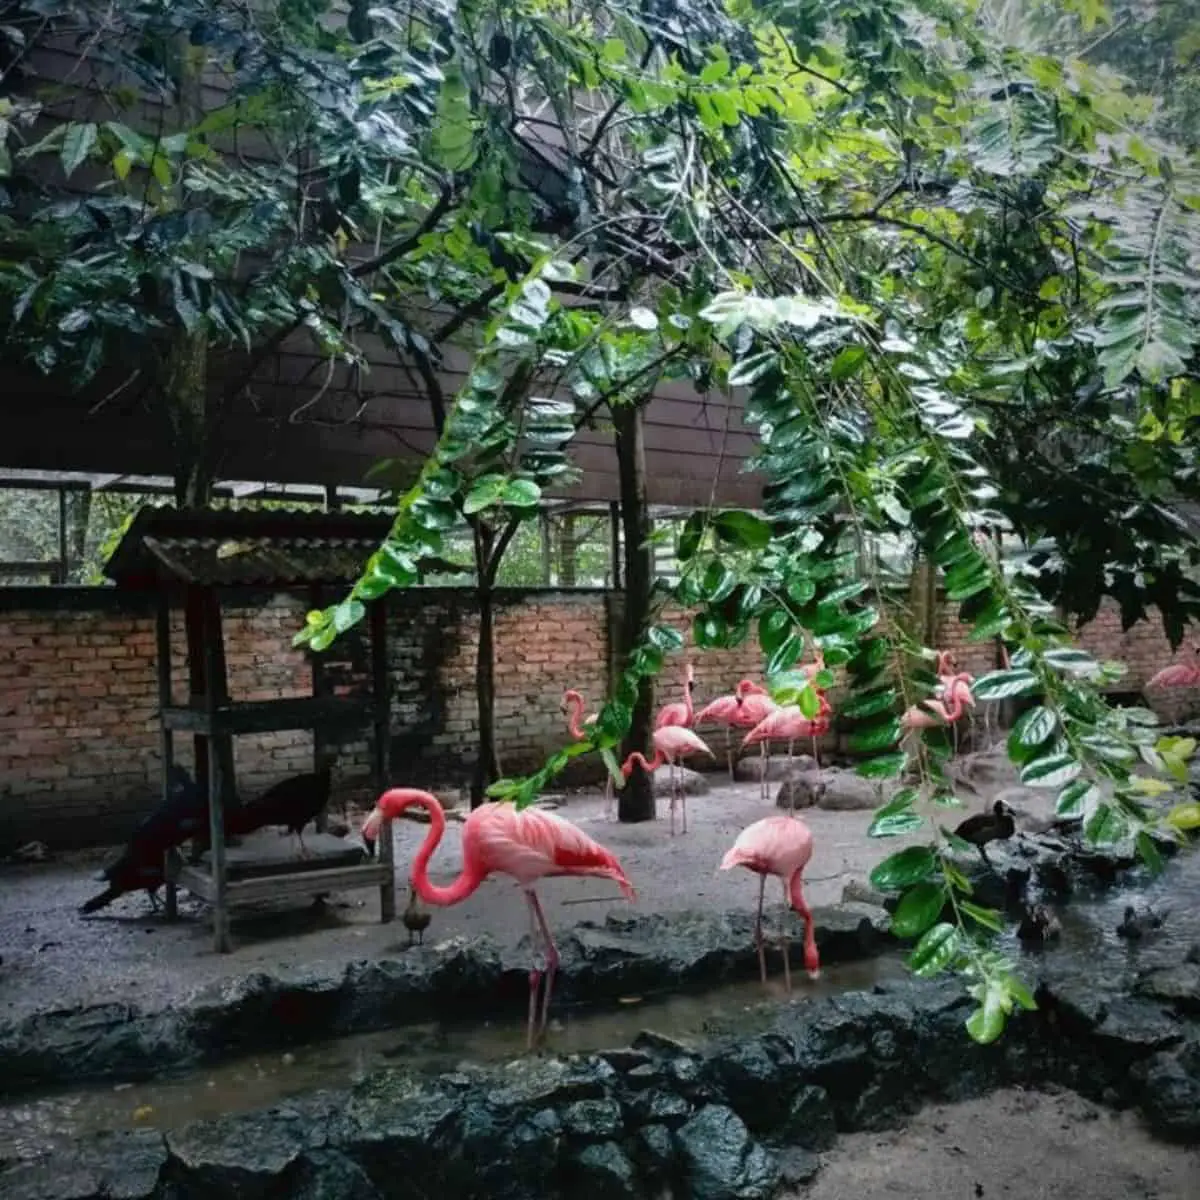 A beautiful shot of flamingos chilling out at Penang Bird Park